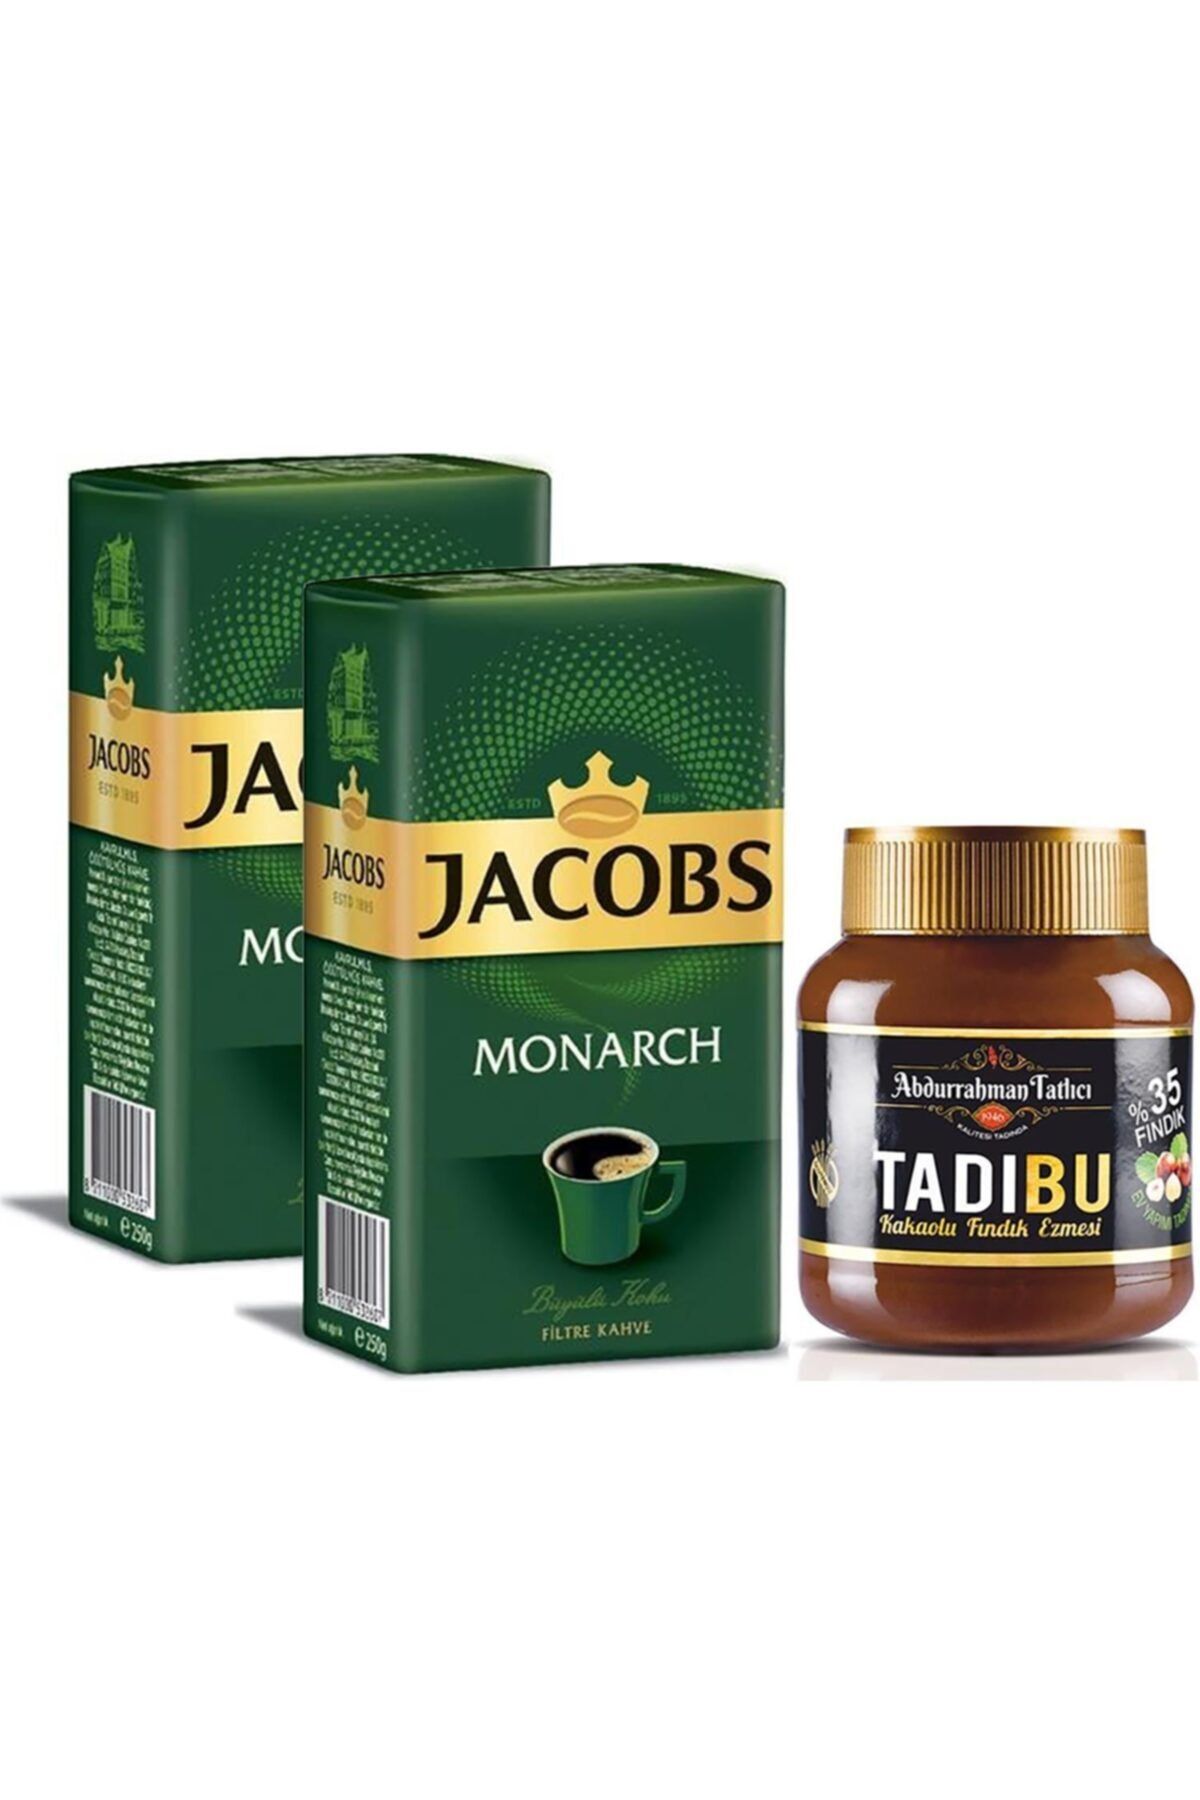 Jacobs Jacobs Monarch Filtre Kahve 2 X 500 Gr + Tadıbu Kakaolu Fındık Ezmesi 330 Gr